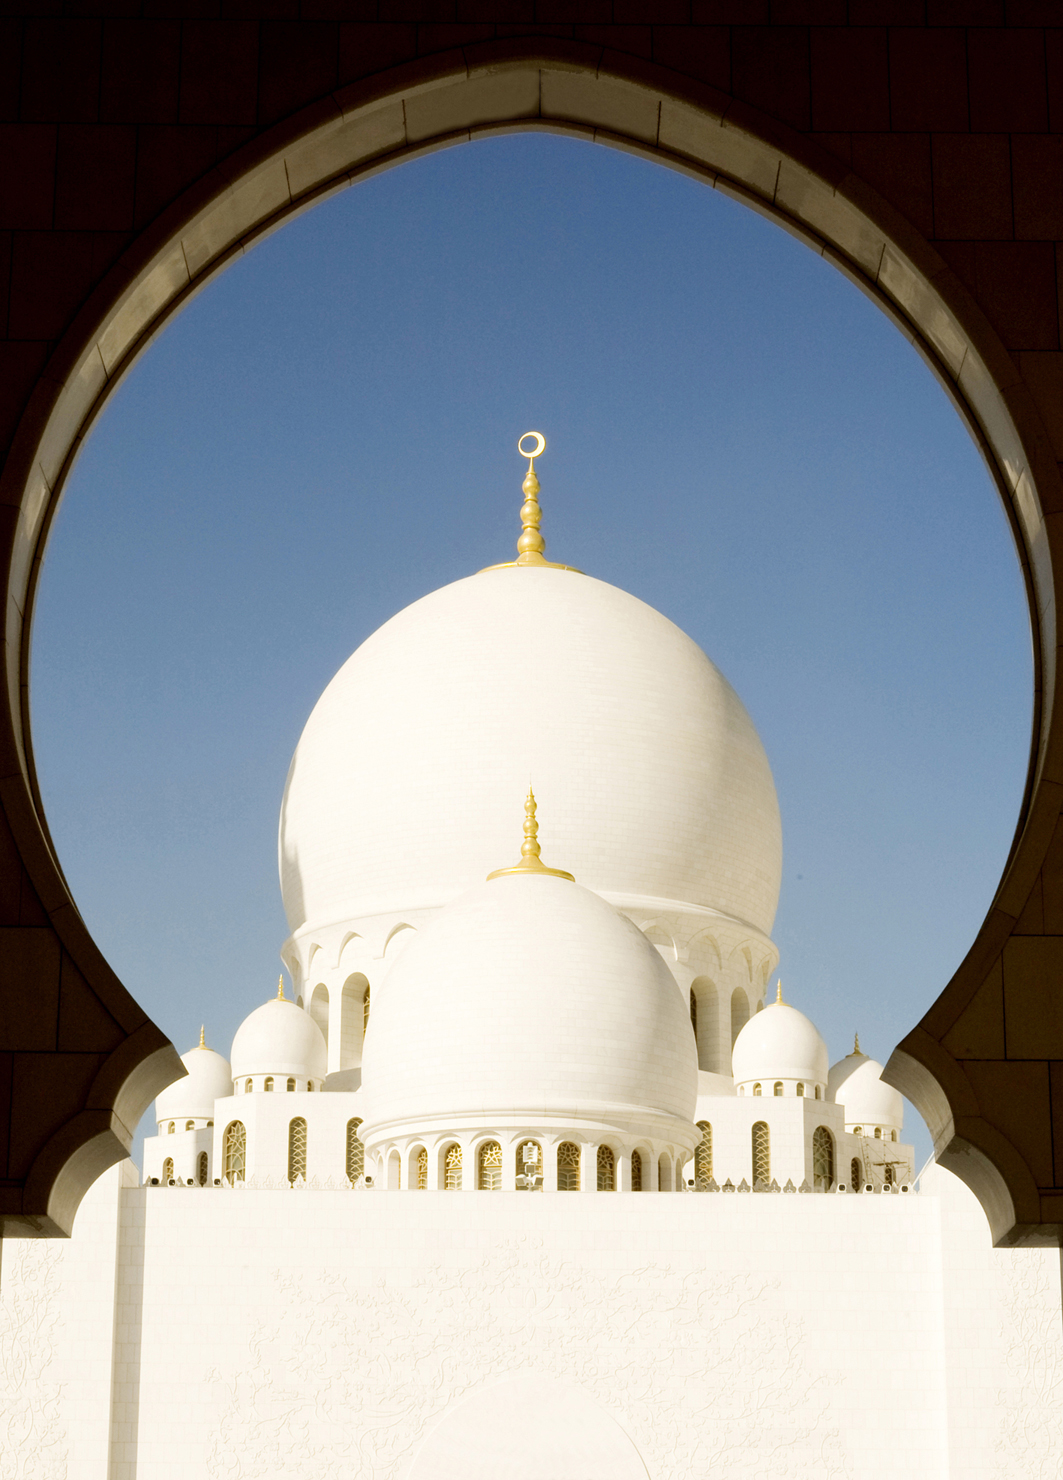 Le ADV con Idee per Viaggiare regalano Abu Dhabi ai clienti